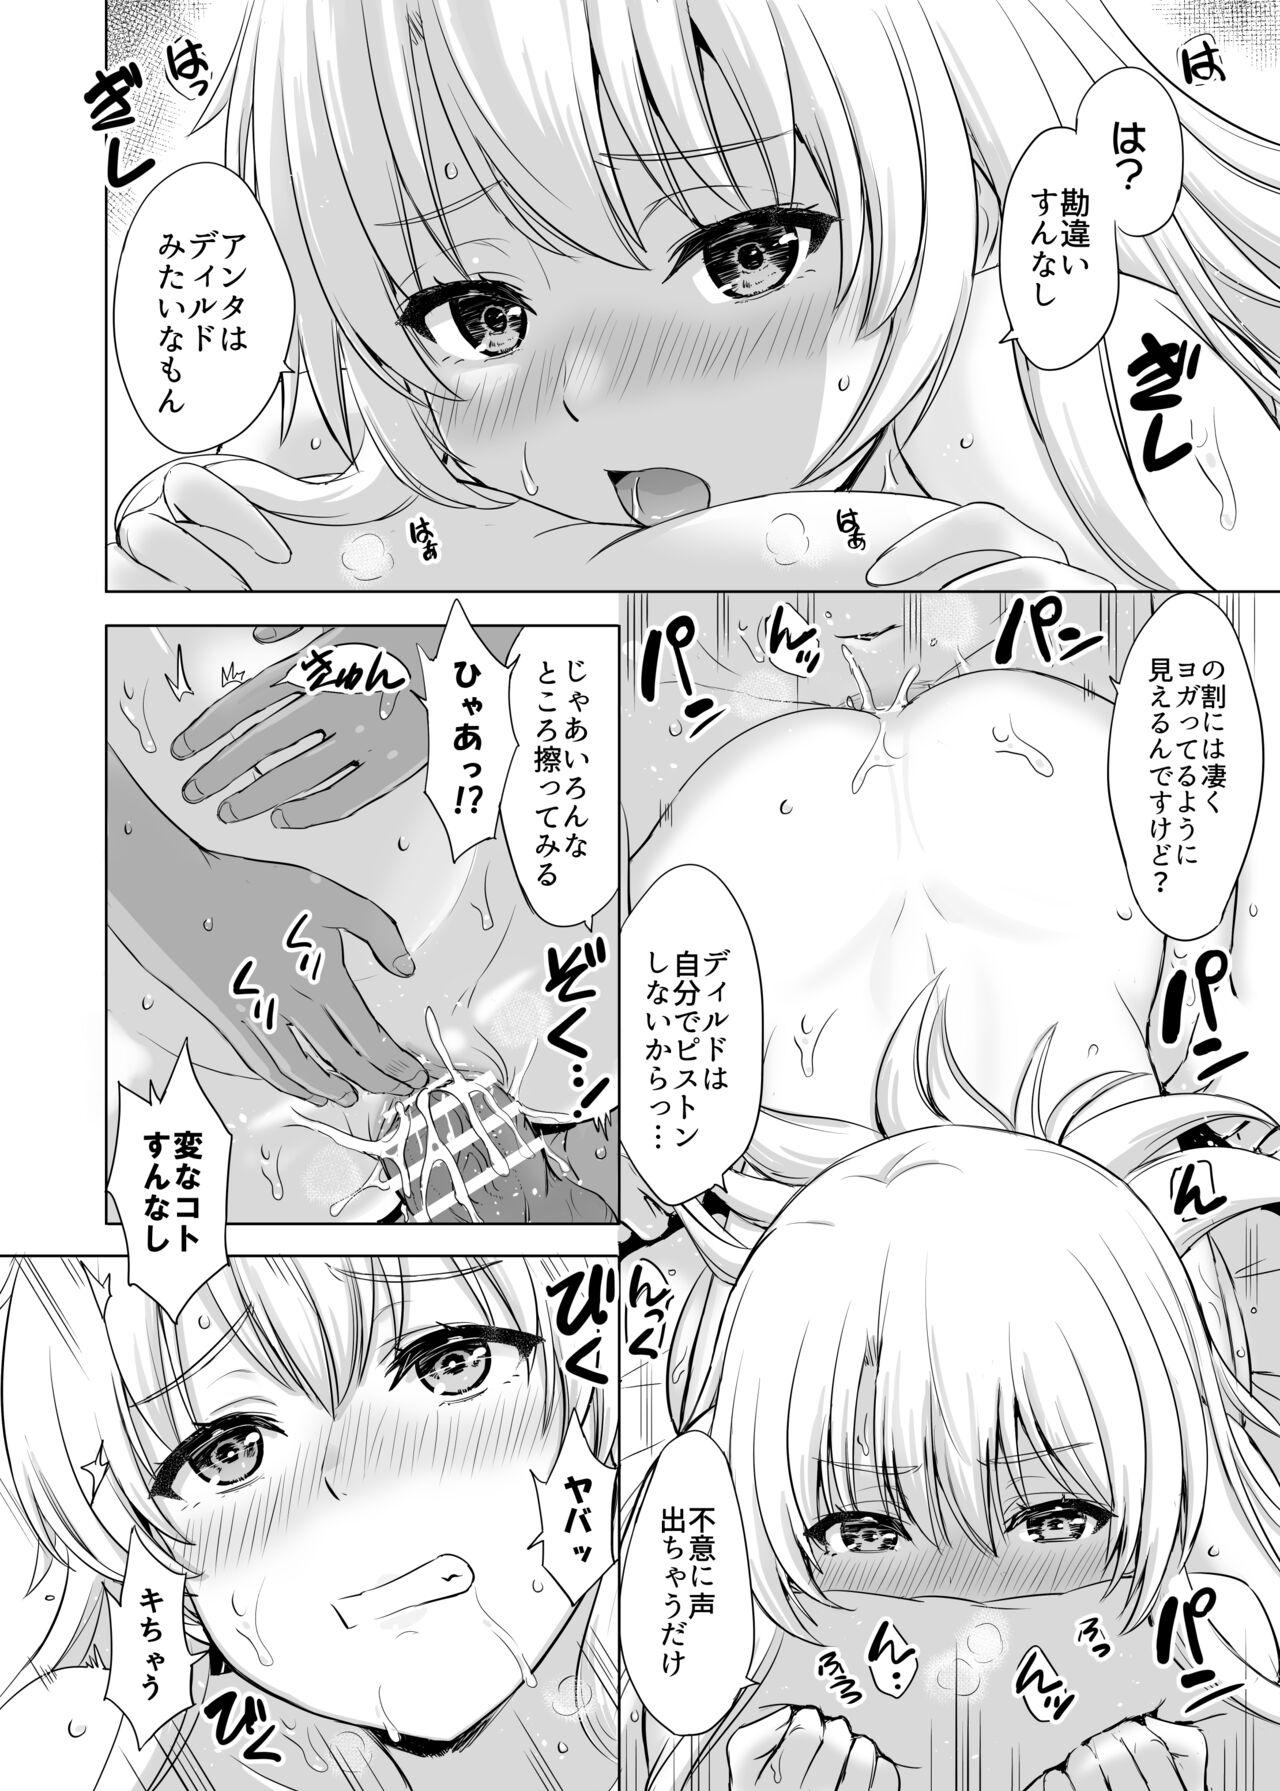 Doctor Sex Aashi-san Manga Sono 1 - Yahari ore no seishun love come wa machigatteiru Porn Star - Page 2